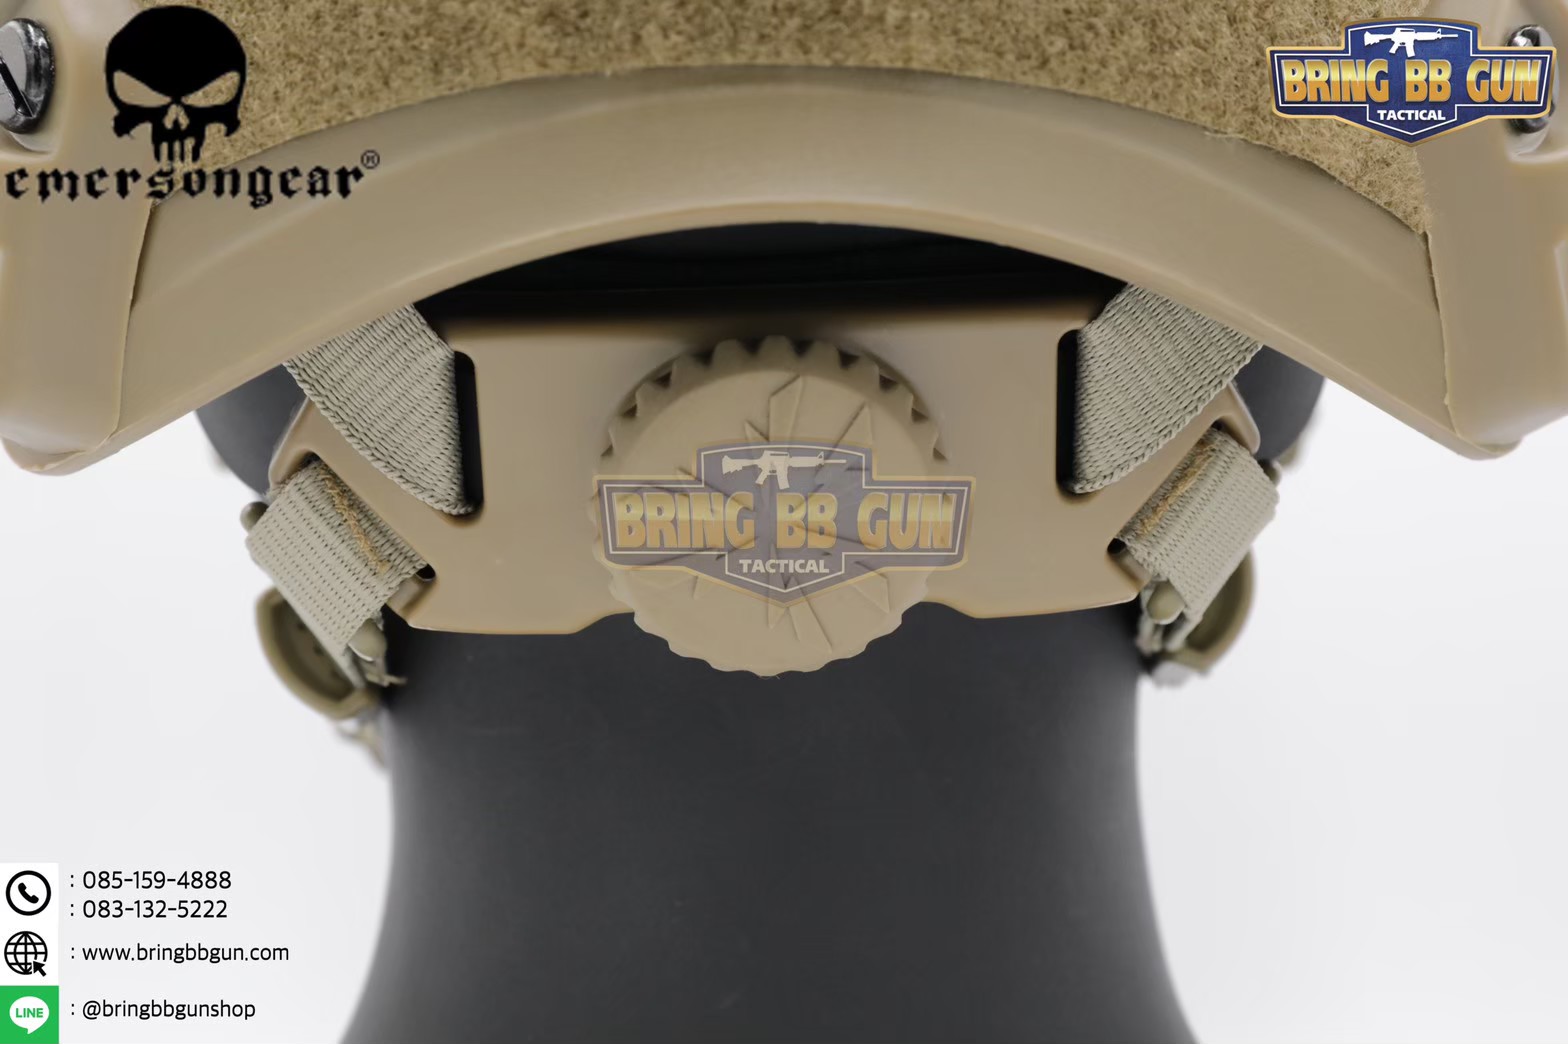 ข้อมูลเพิ่มเติมของ หมวก Fast ยี่ห้อ Emerson รุ่น ปรับท้ายทอยได้ (หมวกฟาส) (Fast Helmet MH type)  ● น้ำหนัก : 589 กรัม ● ขนาด : กว้าง 27.5cm. ยาว 18cm.  ● คุณสมบัติ : 1. ชุดหมวกฟาสมาพร้อมผ้าคลุมหมวกฟาส 2. แป้นหน้าหมวกเป็นอลูมิเนียม แข็งแรงทนทาน (สามรถถอดเปลี่ยนได้) 3. ตัวหมว